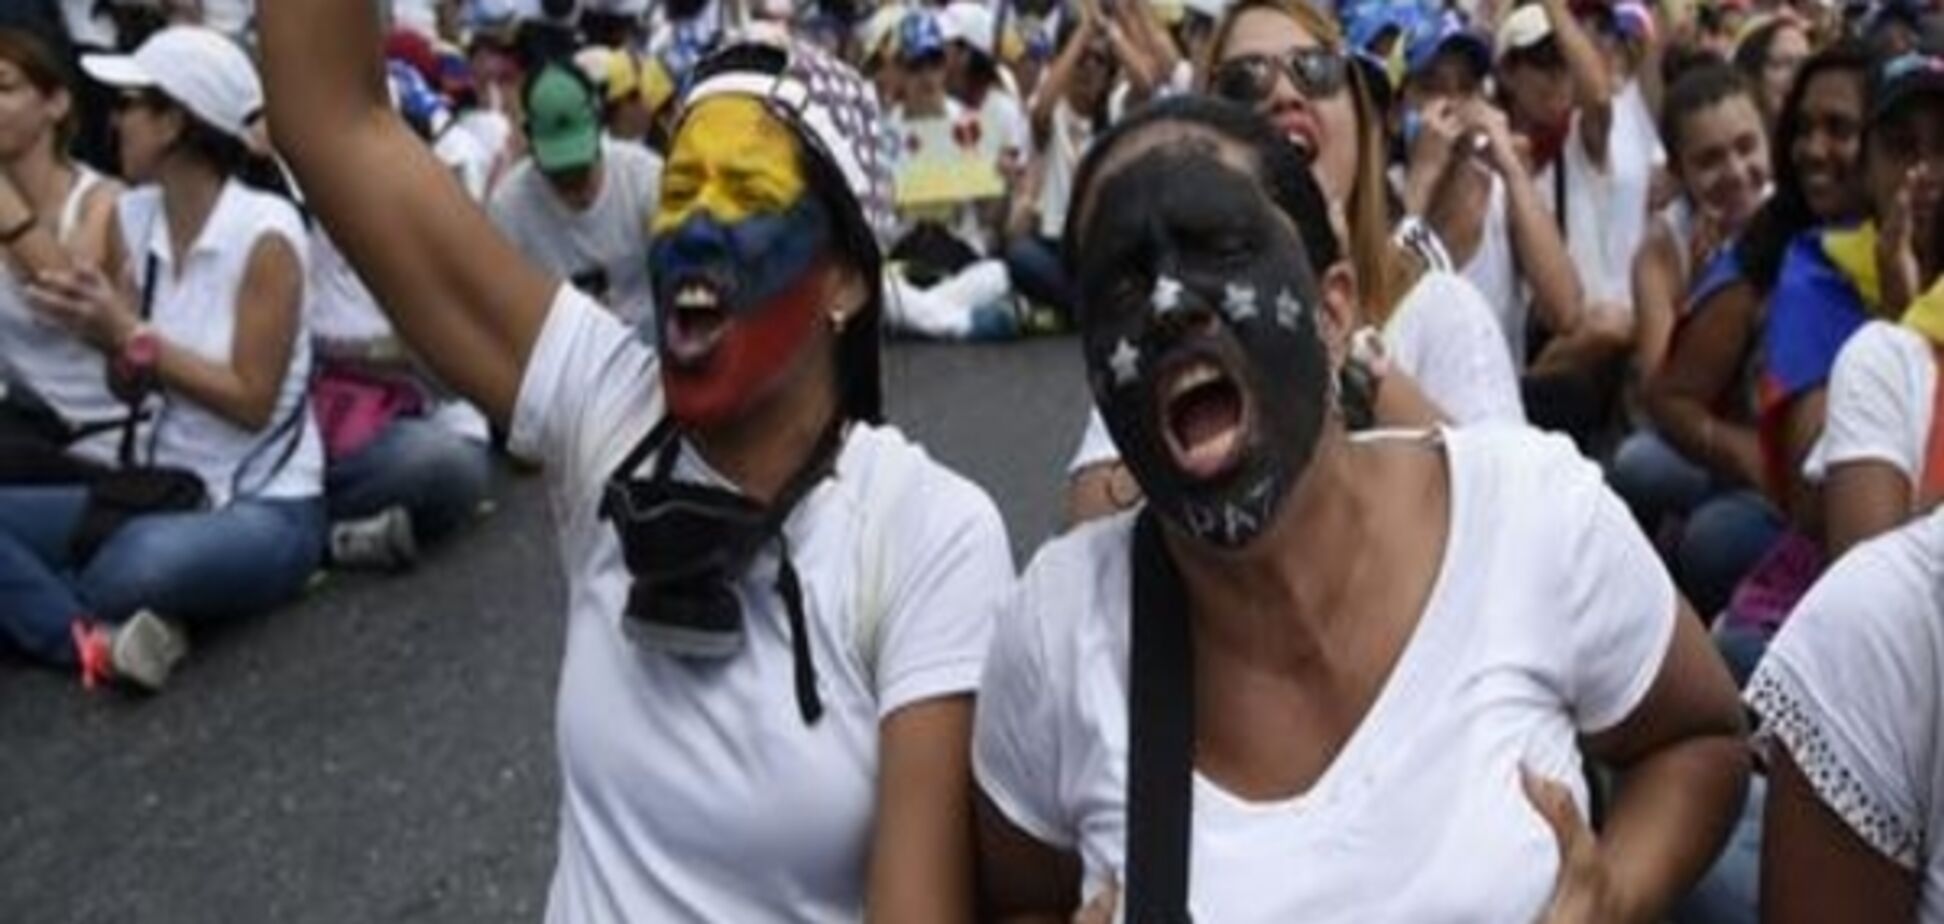 Жінки гупали в пательні та роздягалися на антиурядовому марші у Венесуелі